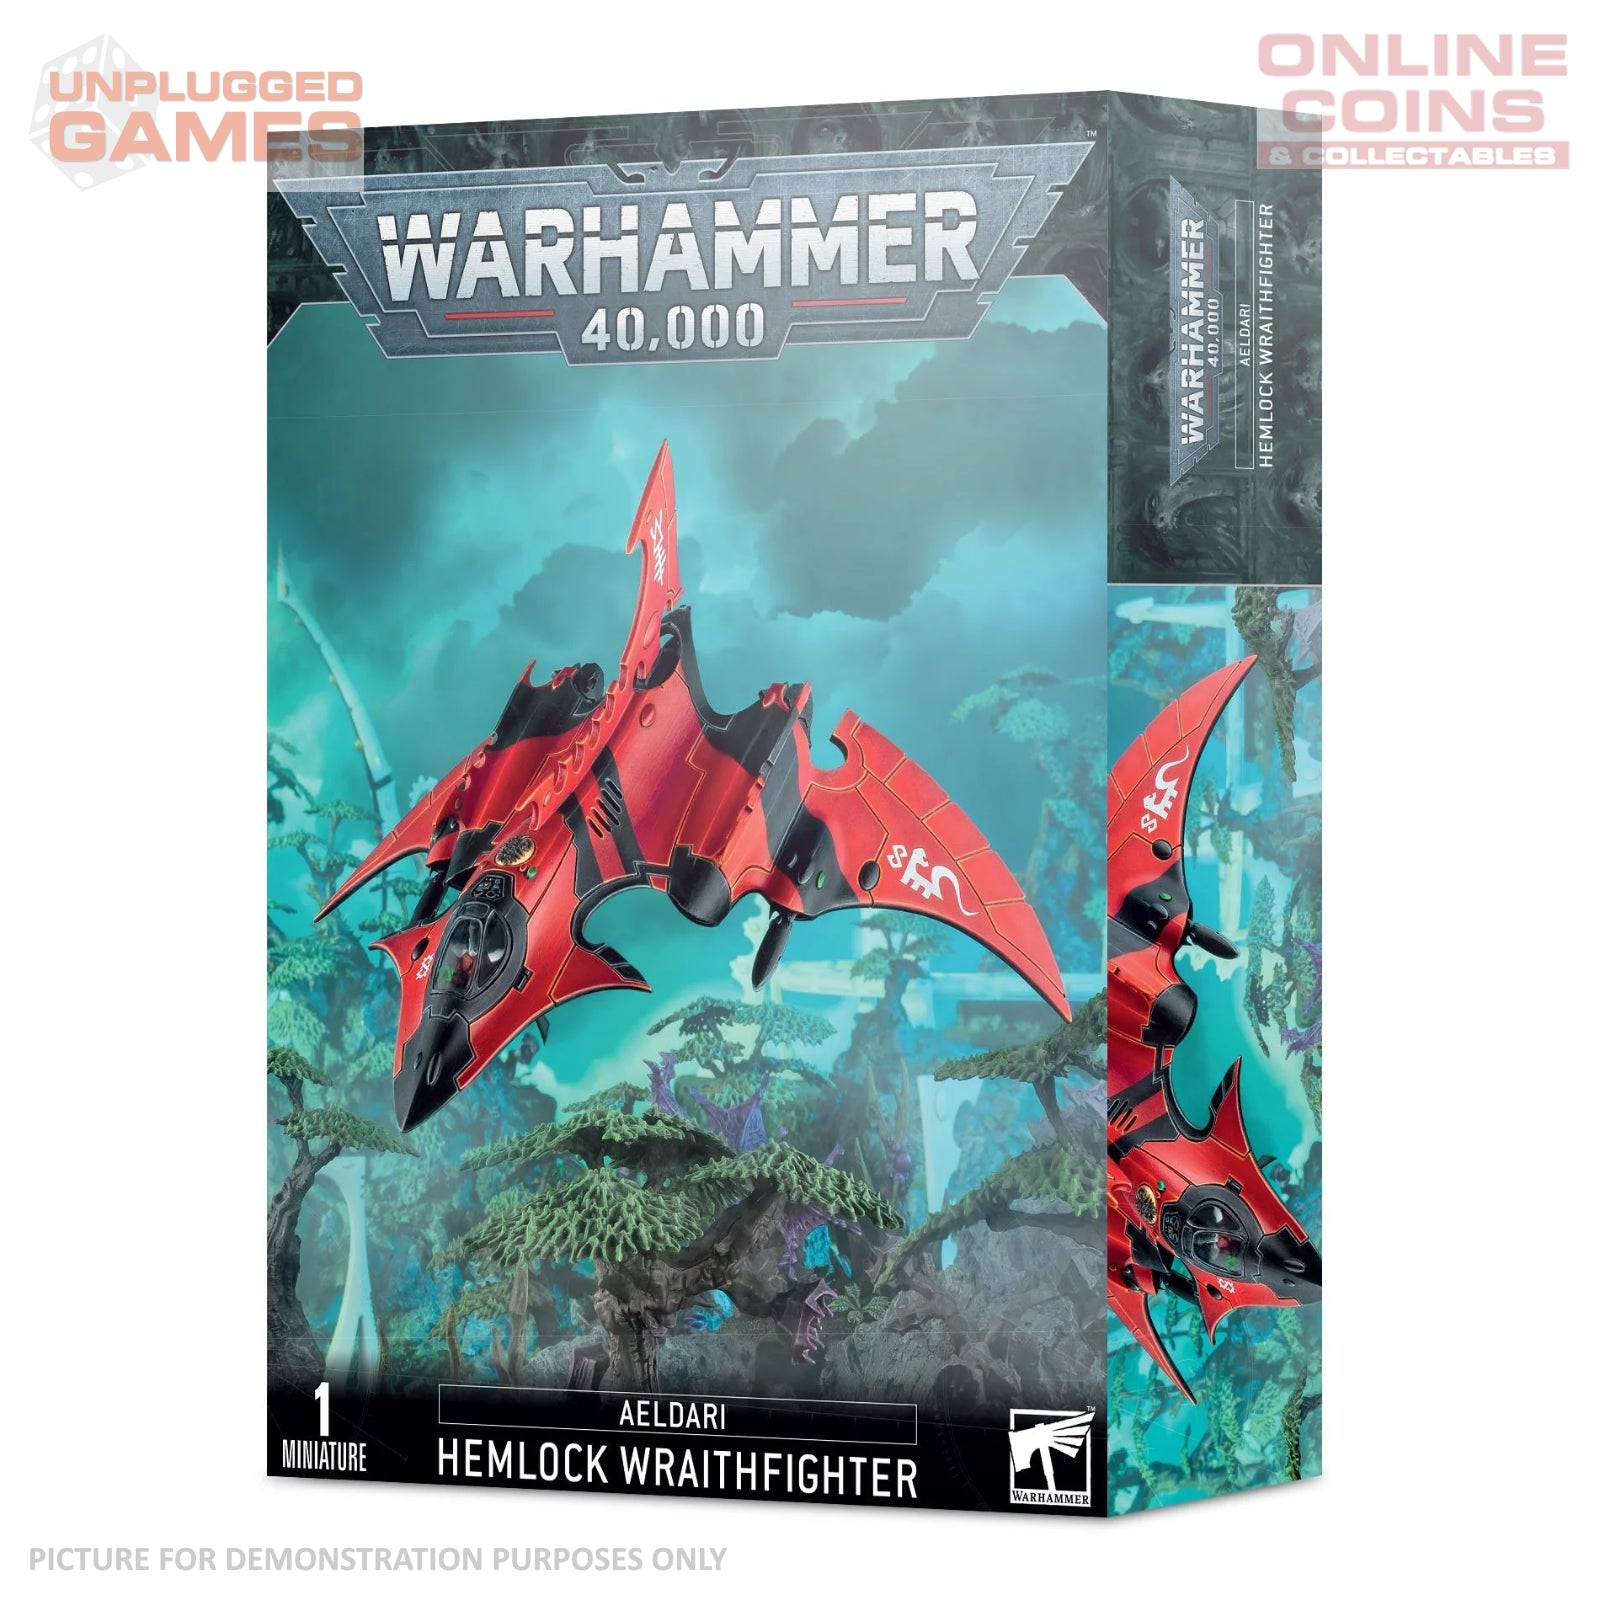 Warhammer 40,000 - Aeldari Hemlock Wraithfighter